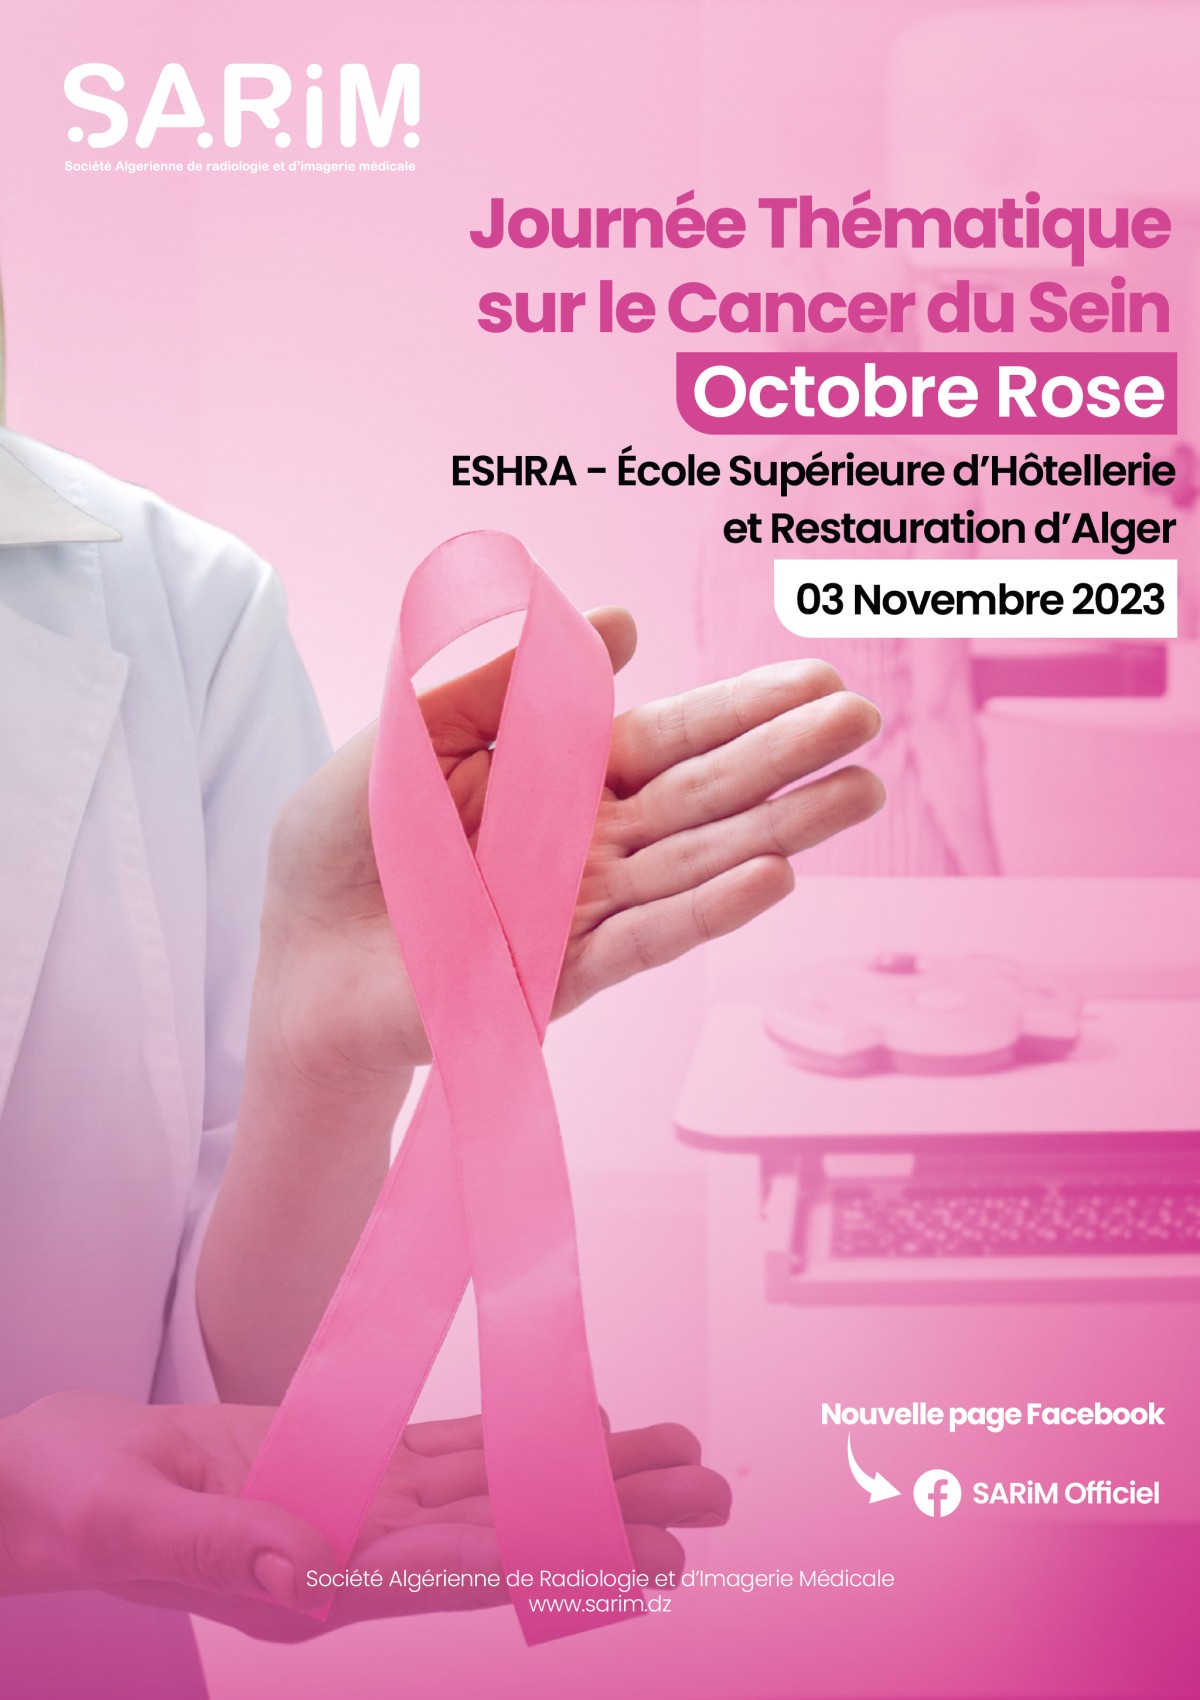 Journée Thématique sur le Cancer du Sein -Octobre Rose- 03 Novembre 2023